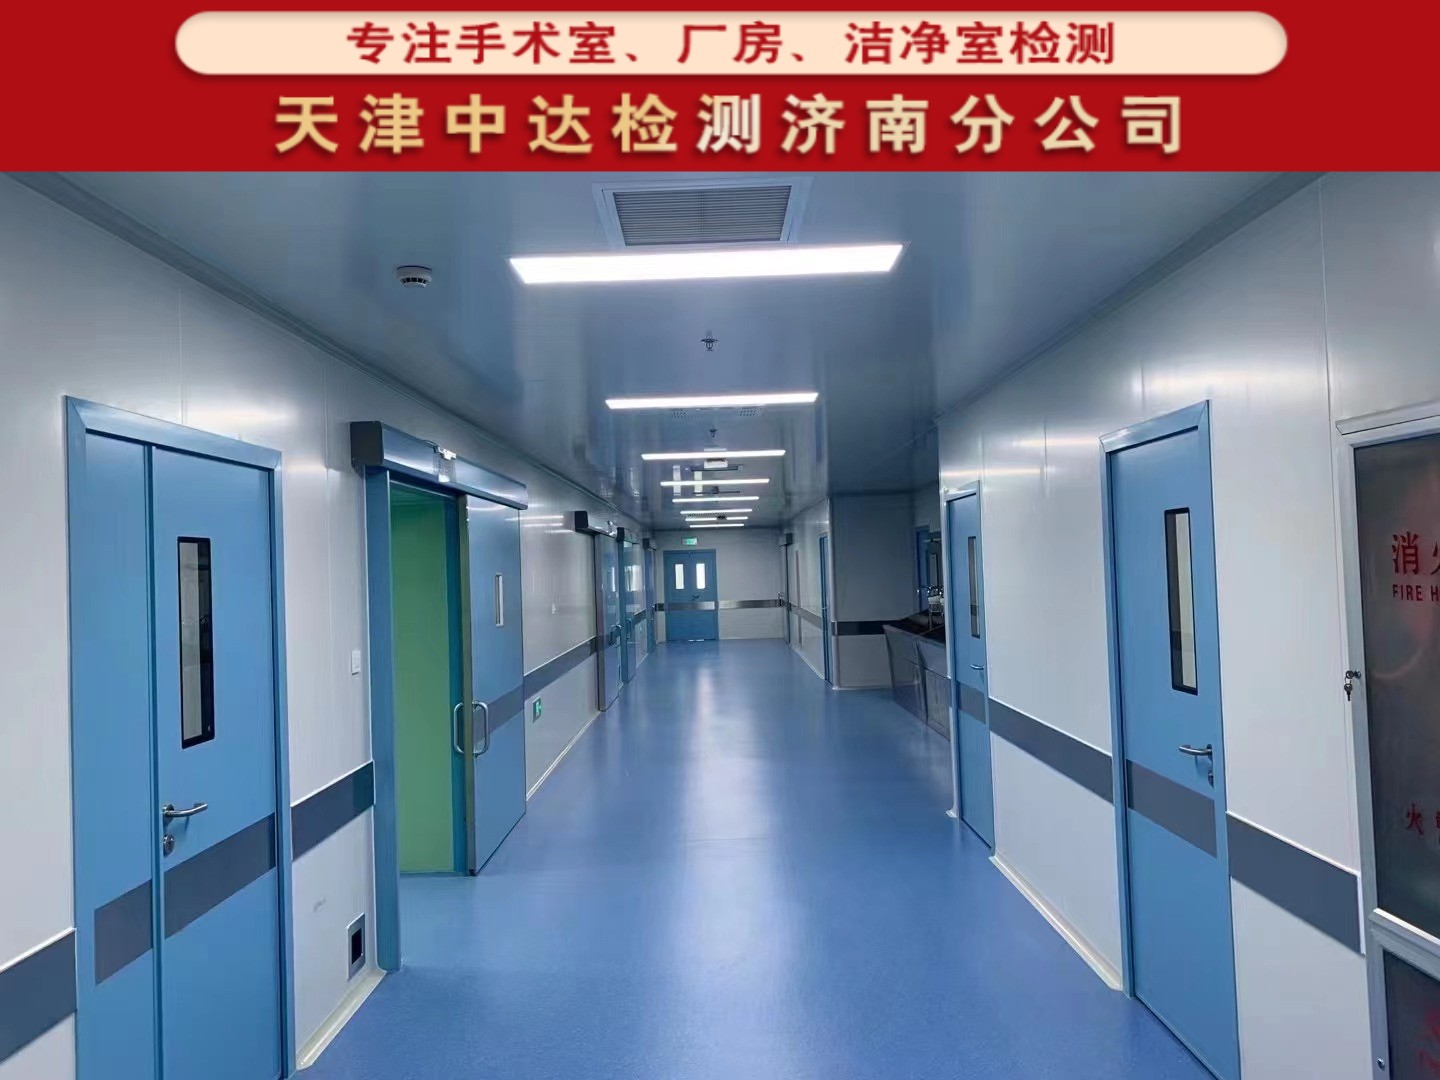 青岛城阳区人民医院手术室及ICU洁净检测单位-天津中达检测济南分公司